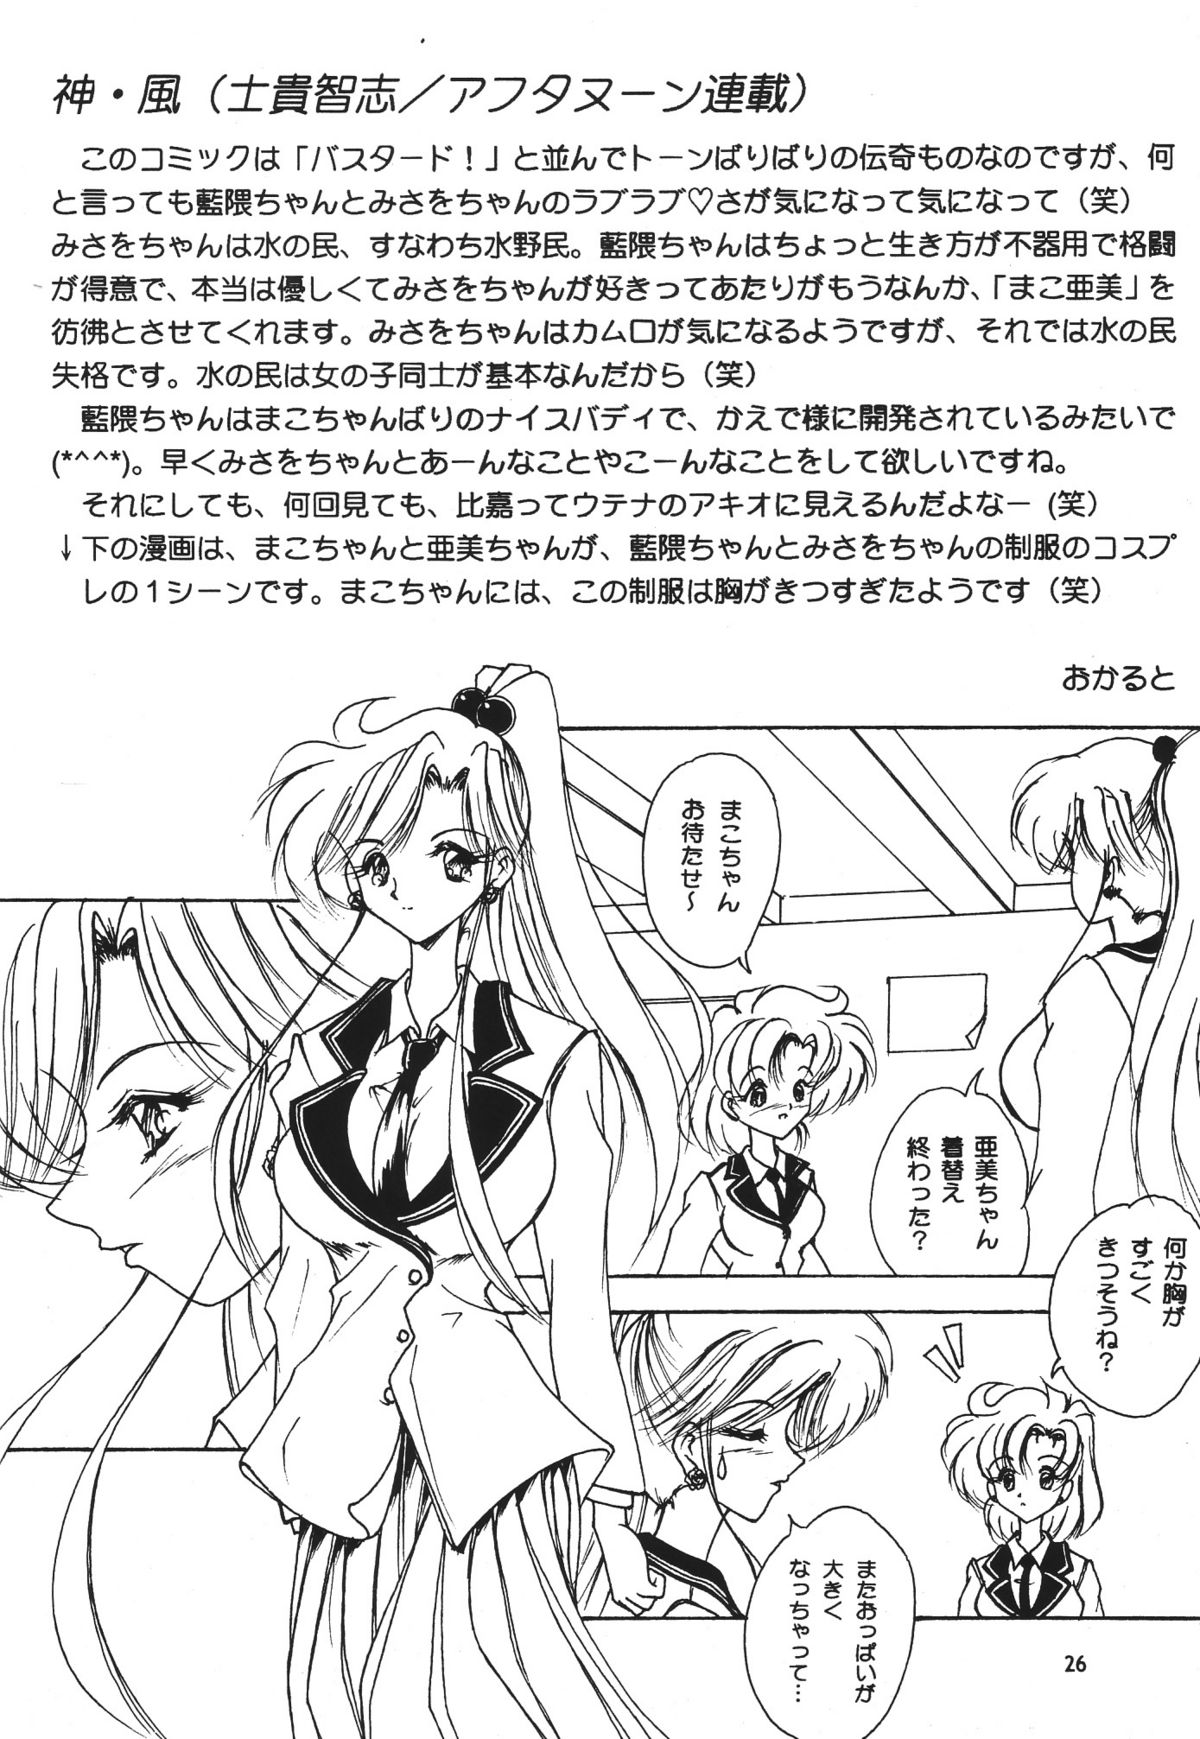 [Seishun No Nigirikobushi!] Favorite Visions 2 (Sailor Moon, AIKa) page 28 full